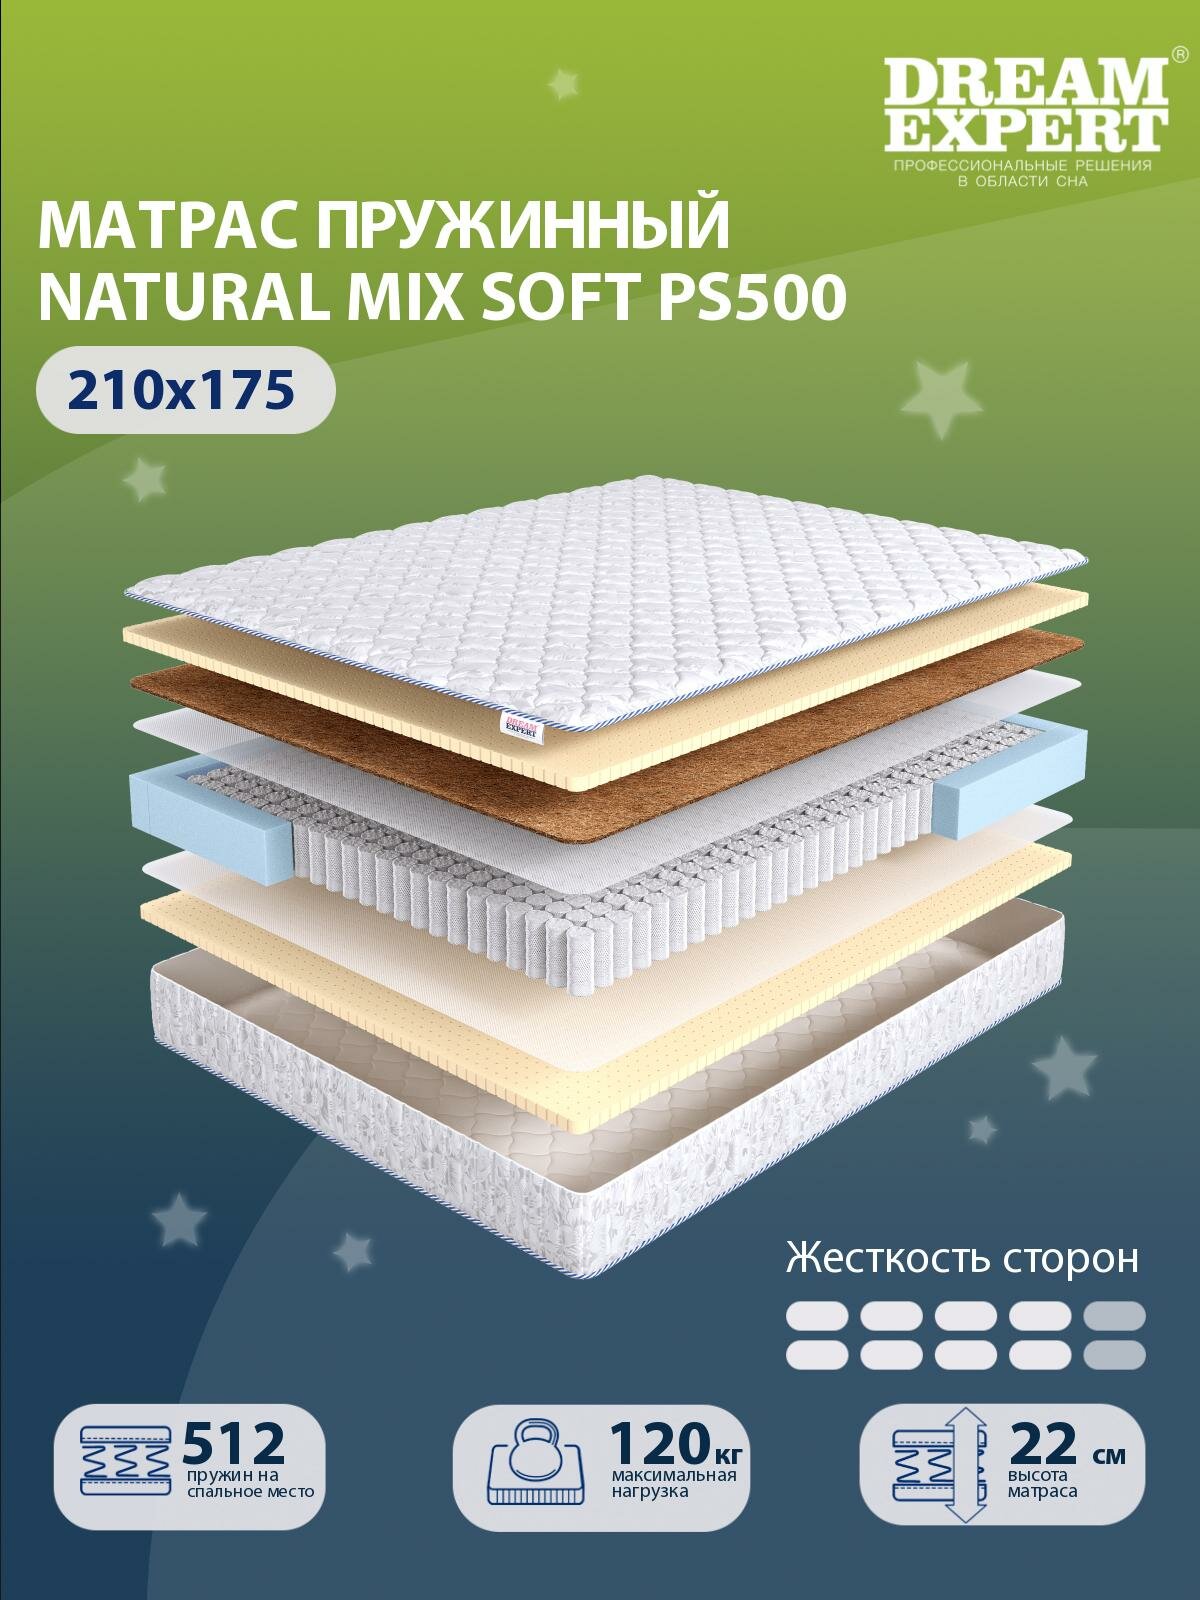 Матрас DreamExpert Natural Mix Soft PS500 выше средней жесткости, двуспальный, независимые пружины, на кровать 210x175